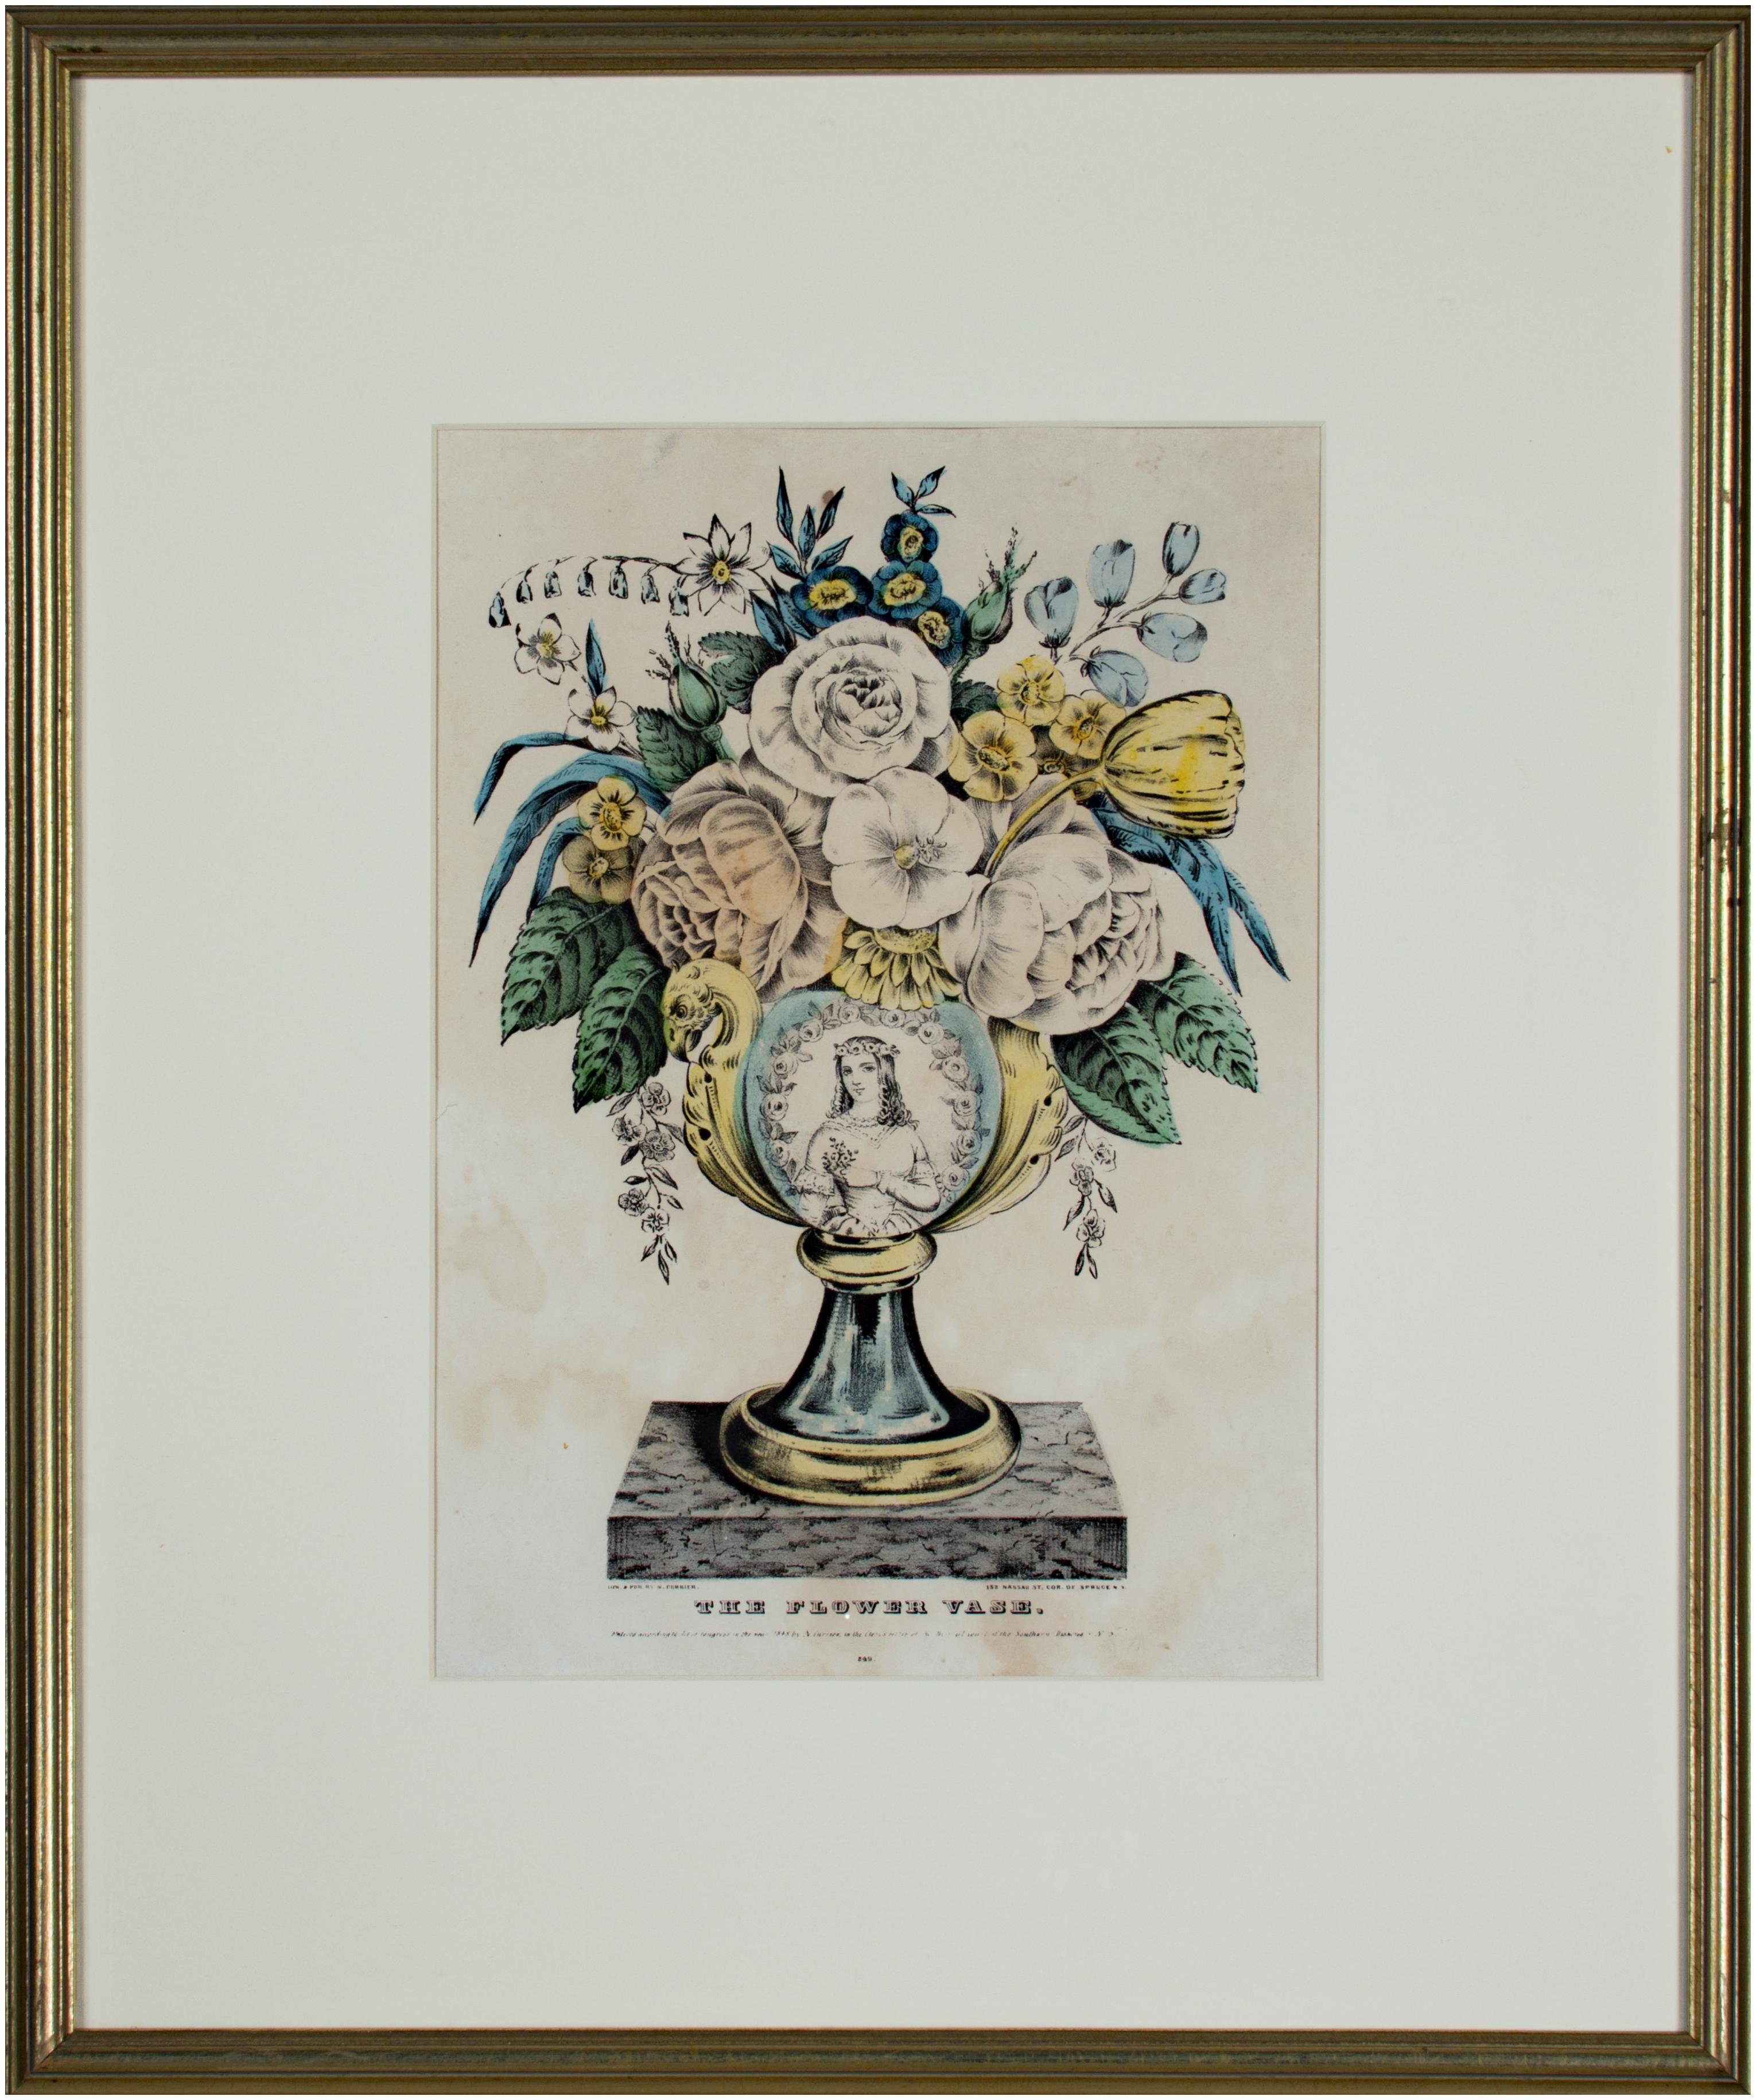 La présente lithographie coloriée à la main est l'une des nombreuses images décoratives de vases remplis de fleurs publiées par Nathaniel Currier. Cet exemple contient des roses, des tulipes, des myosotis et autres, le tout dans un vase avec des